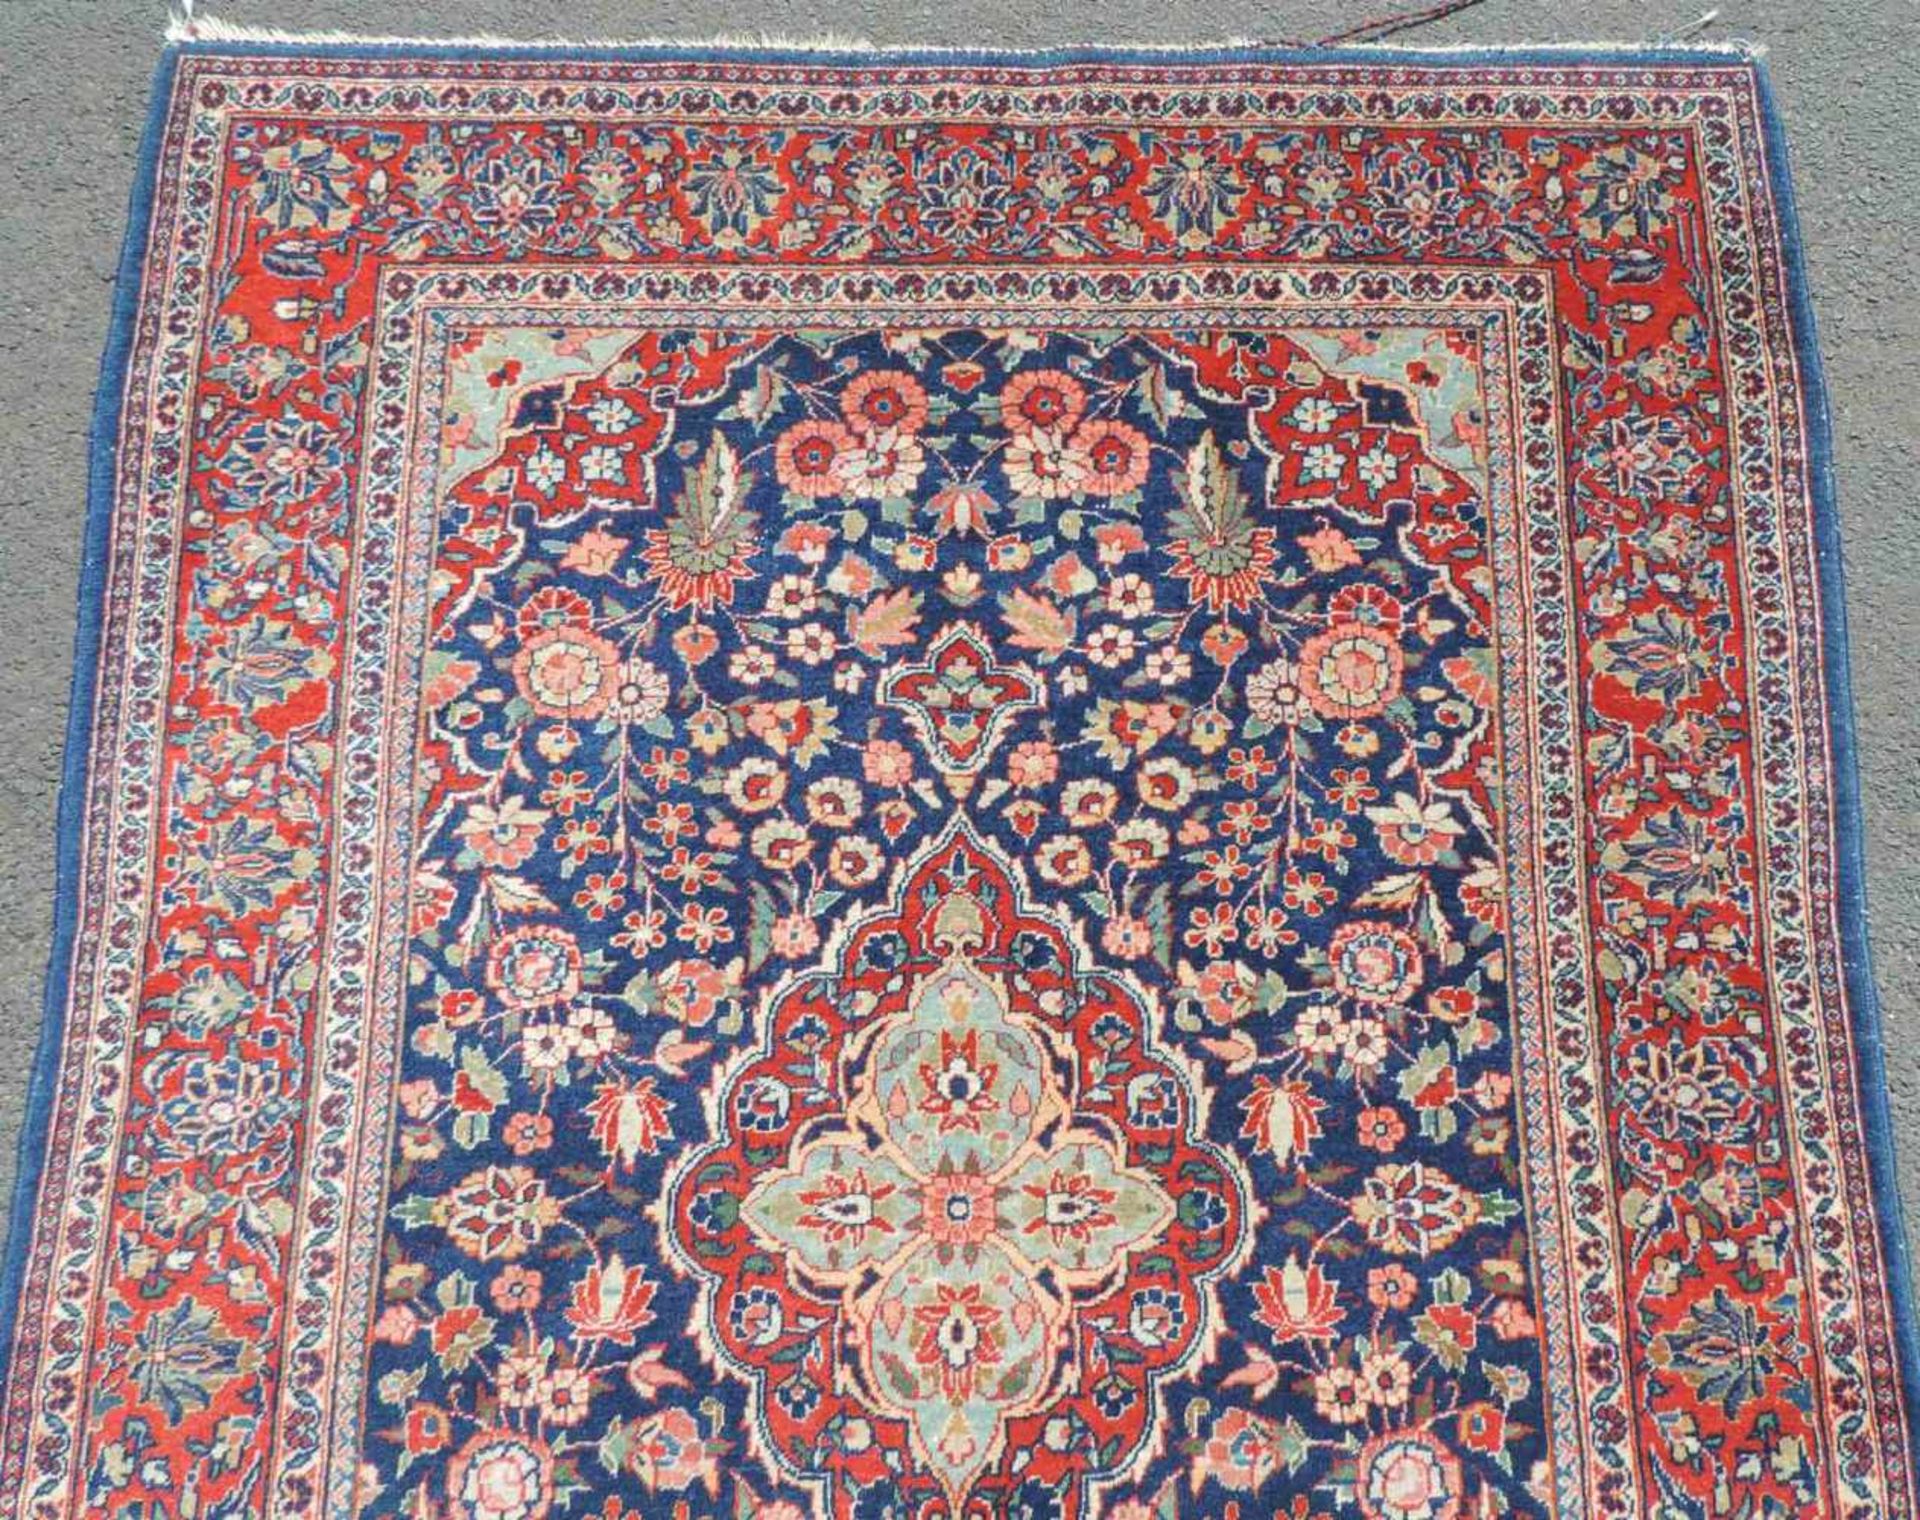 Keschan, Perserteppich, Iran.158 cm x 112 cm. Handgeknüpft. Wolle auf Wolle. Kein Versand in die - Image 3 of 4